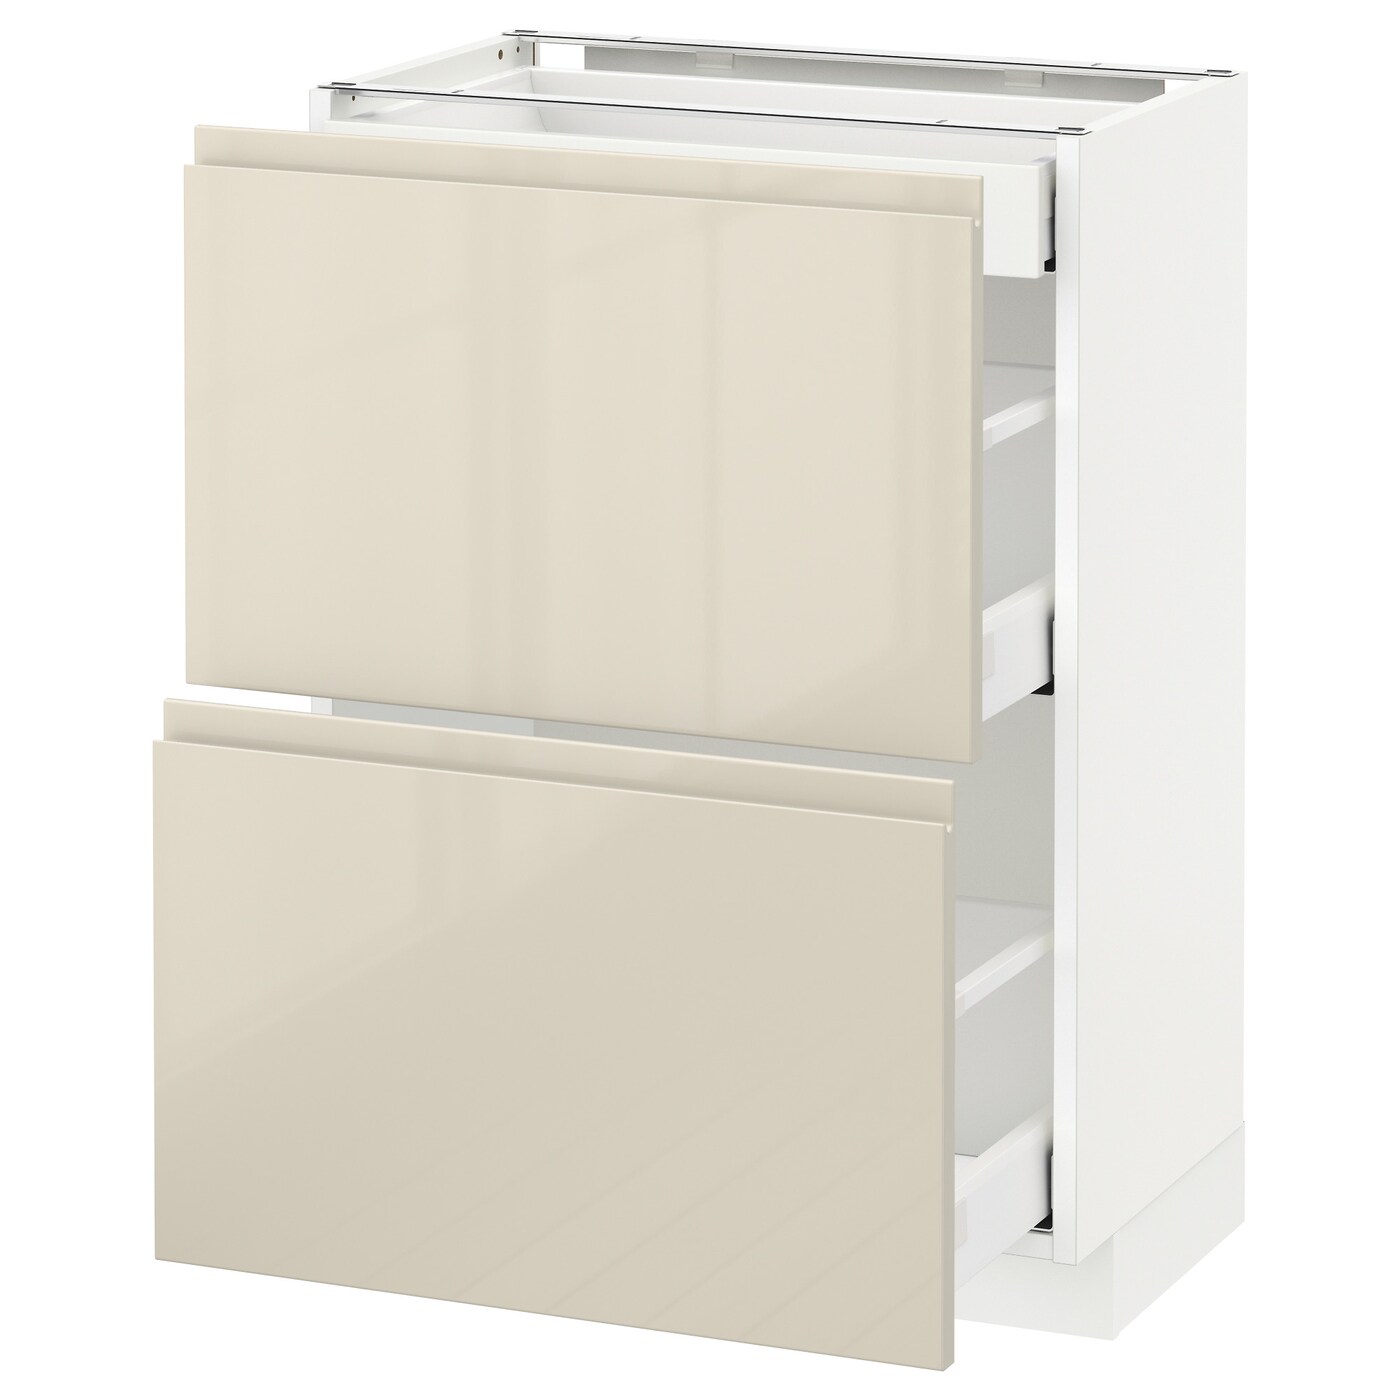 Напольный кухонный шкаф  - IKEA METOD MAXIMERA, 88x39x60см, белый/бежевый, МЕТОД МАКСИМЕРА ИКЕА